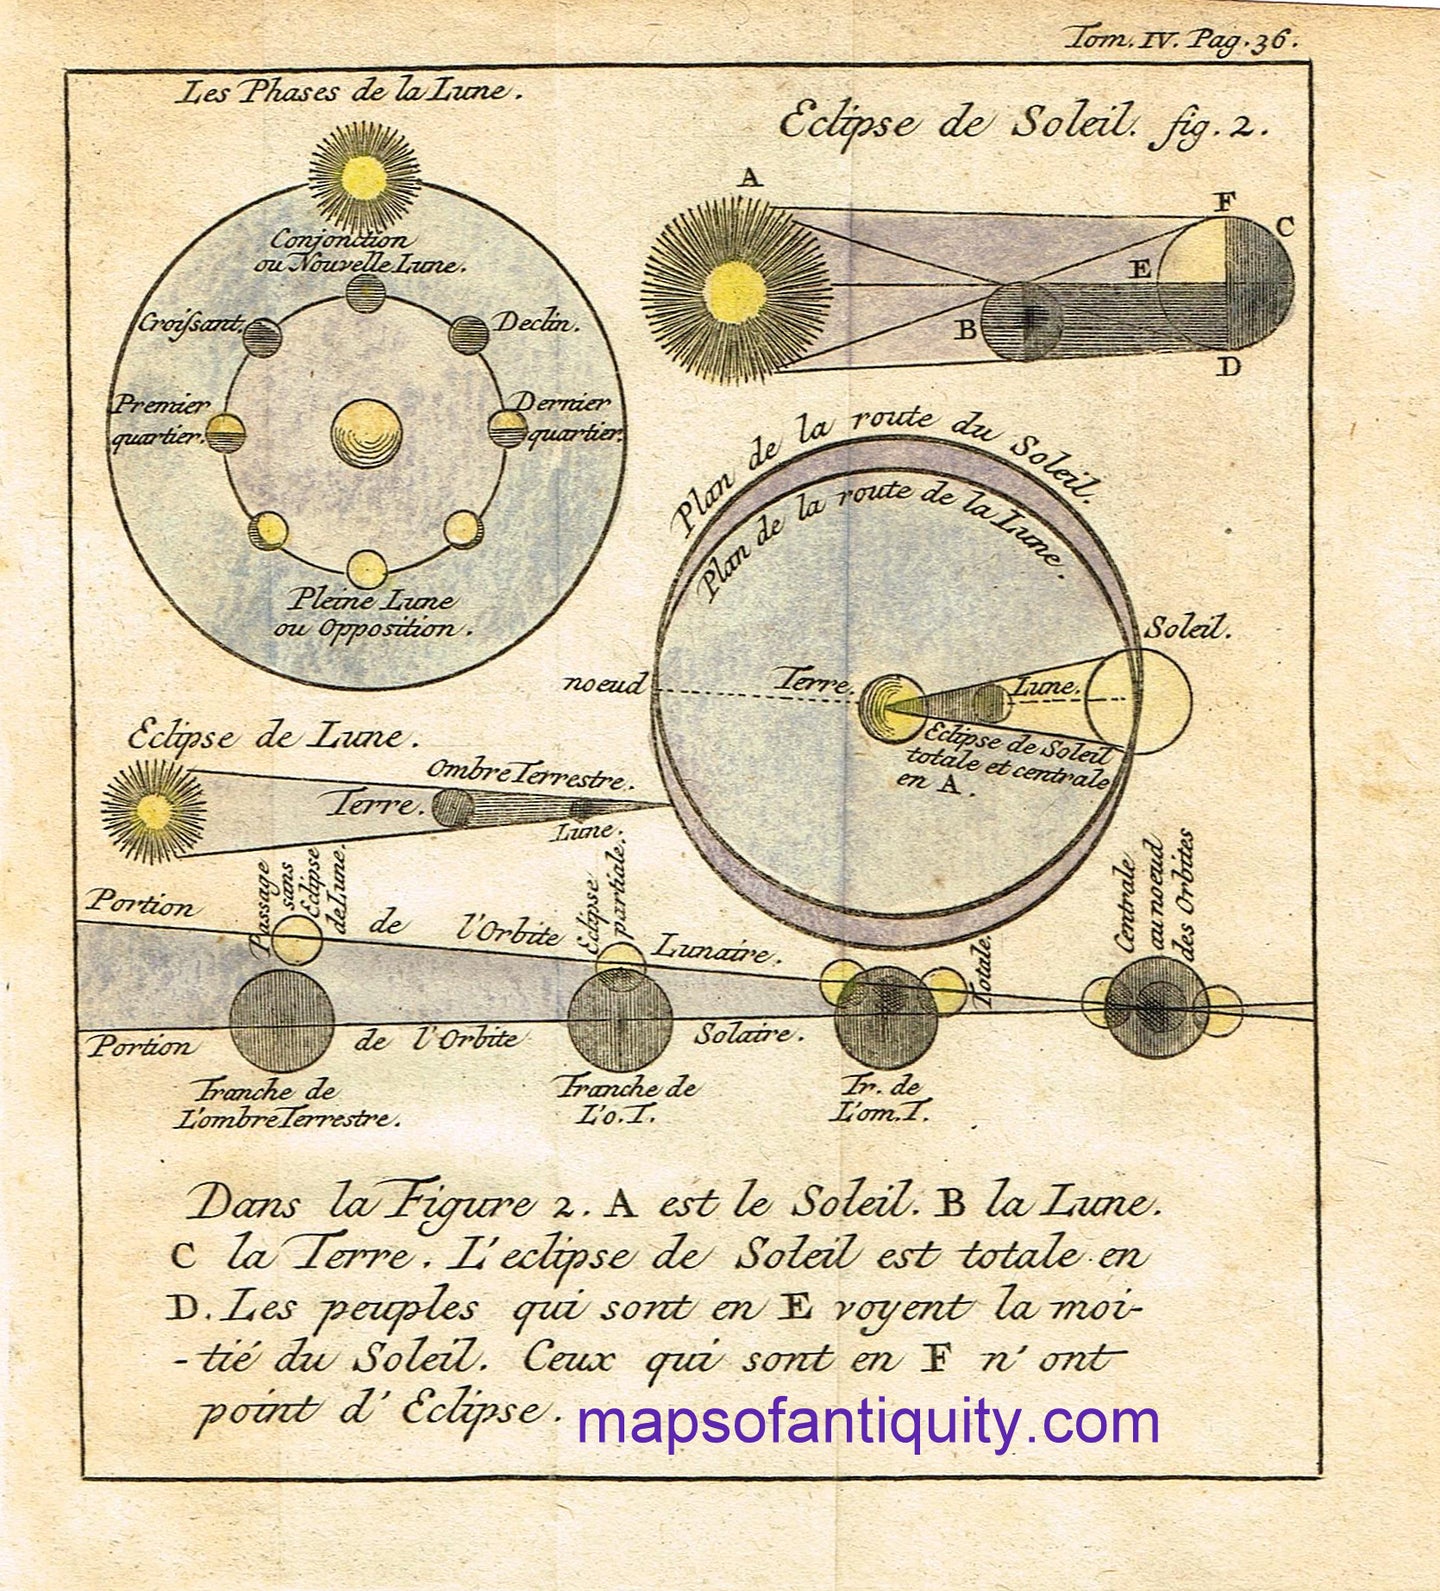 Hand-Colored-Antique-Illustration-Les-Phases-des-la-Lune-Eclipse-de-Soleil-**********-Celestial--1731-Pluche-Maps-Of-Antiquity